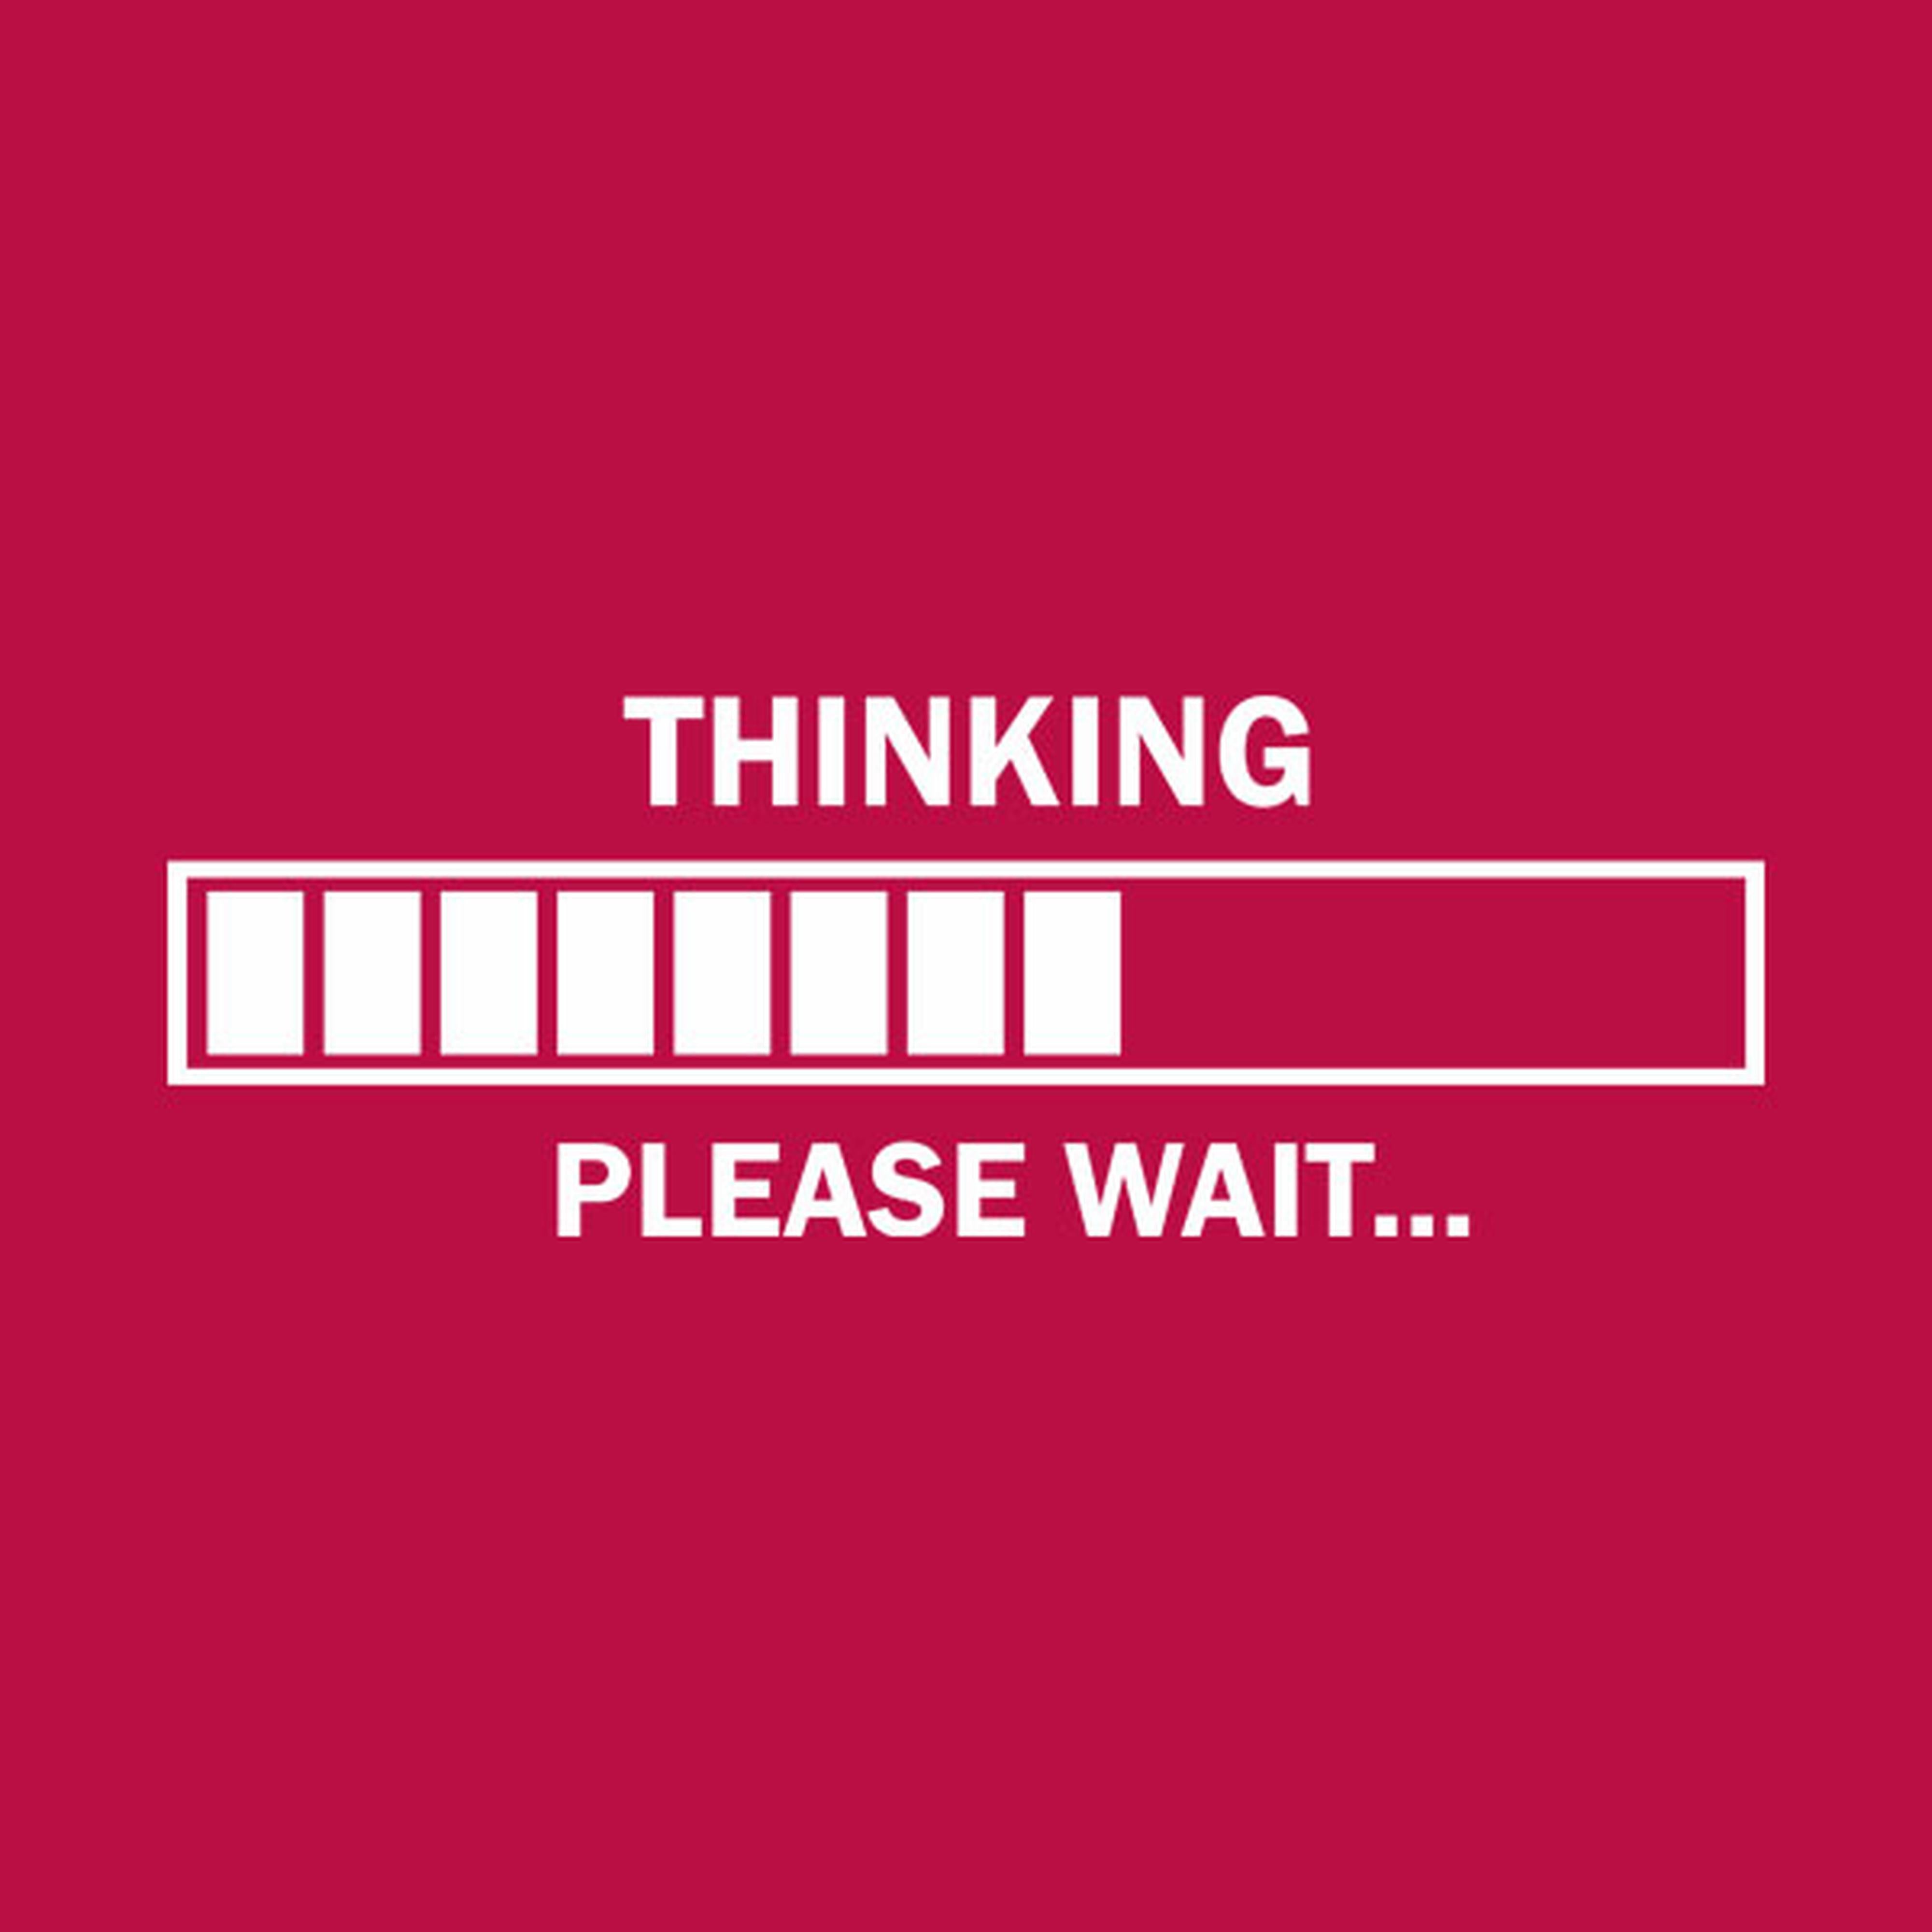 Thinking. Please wait - T-shirt